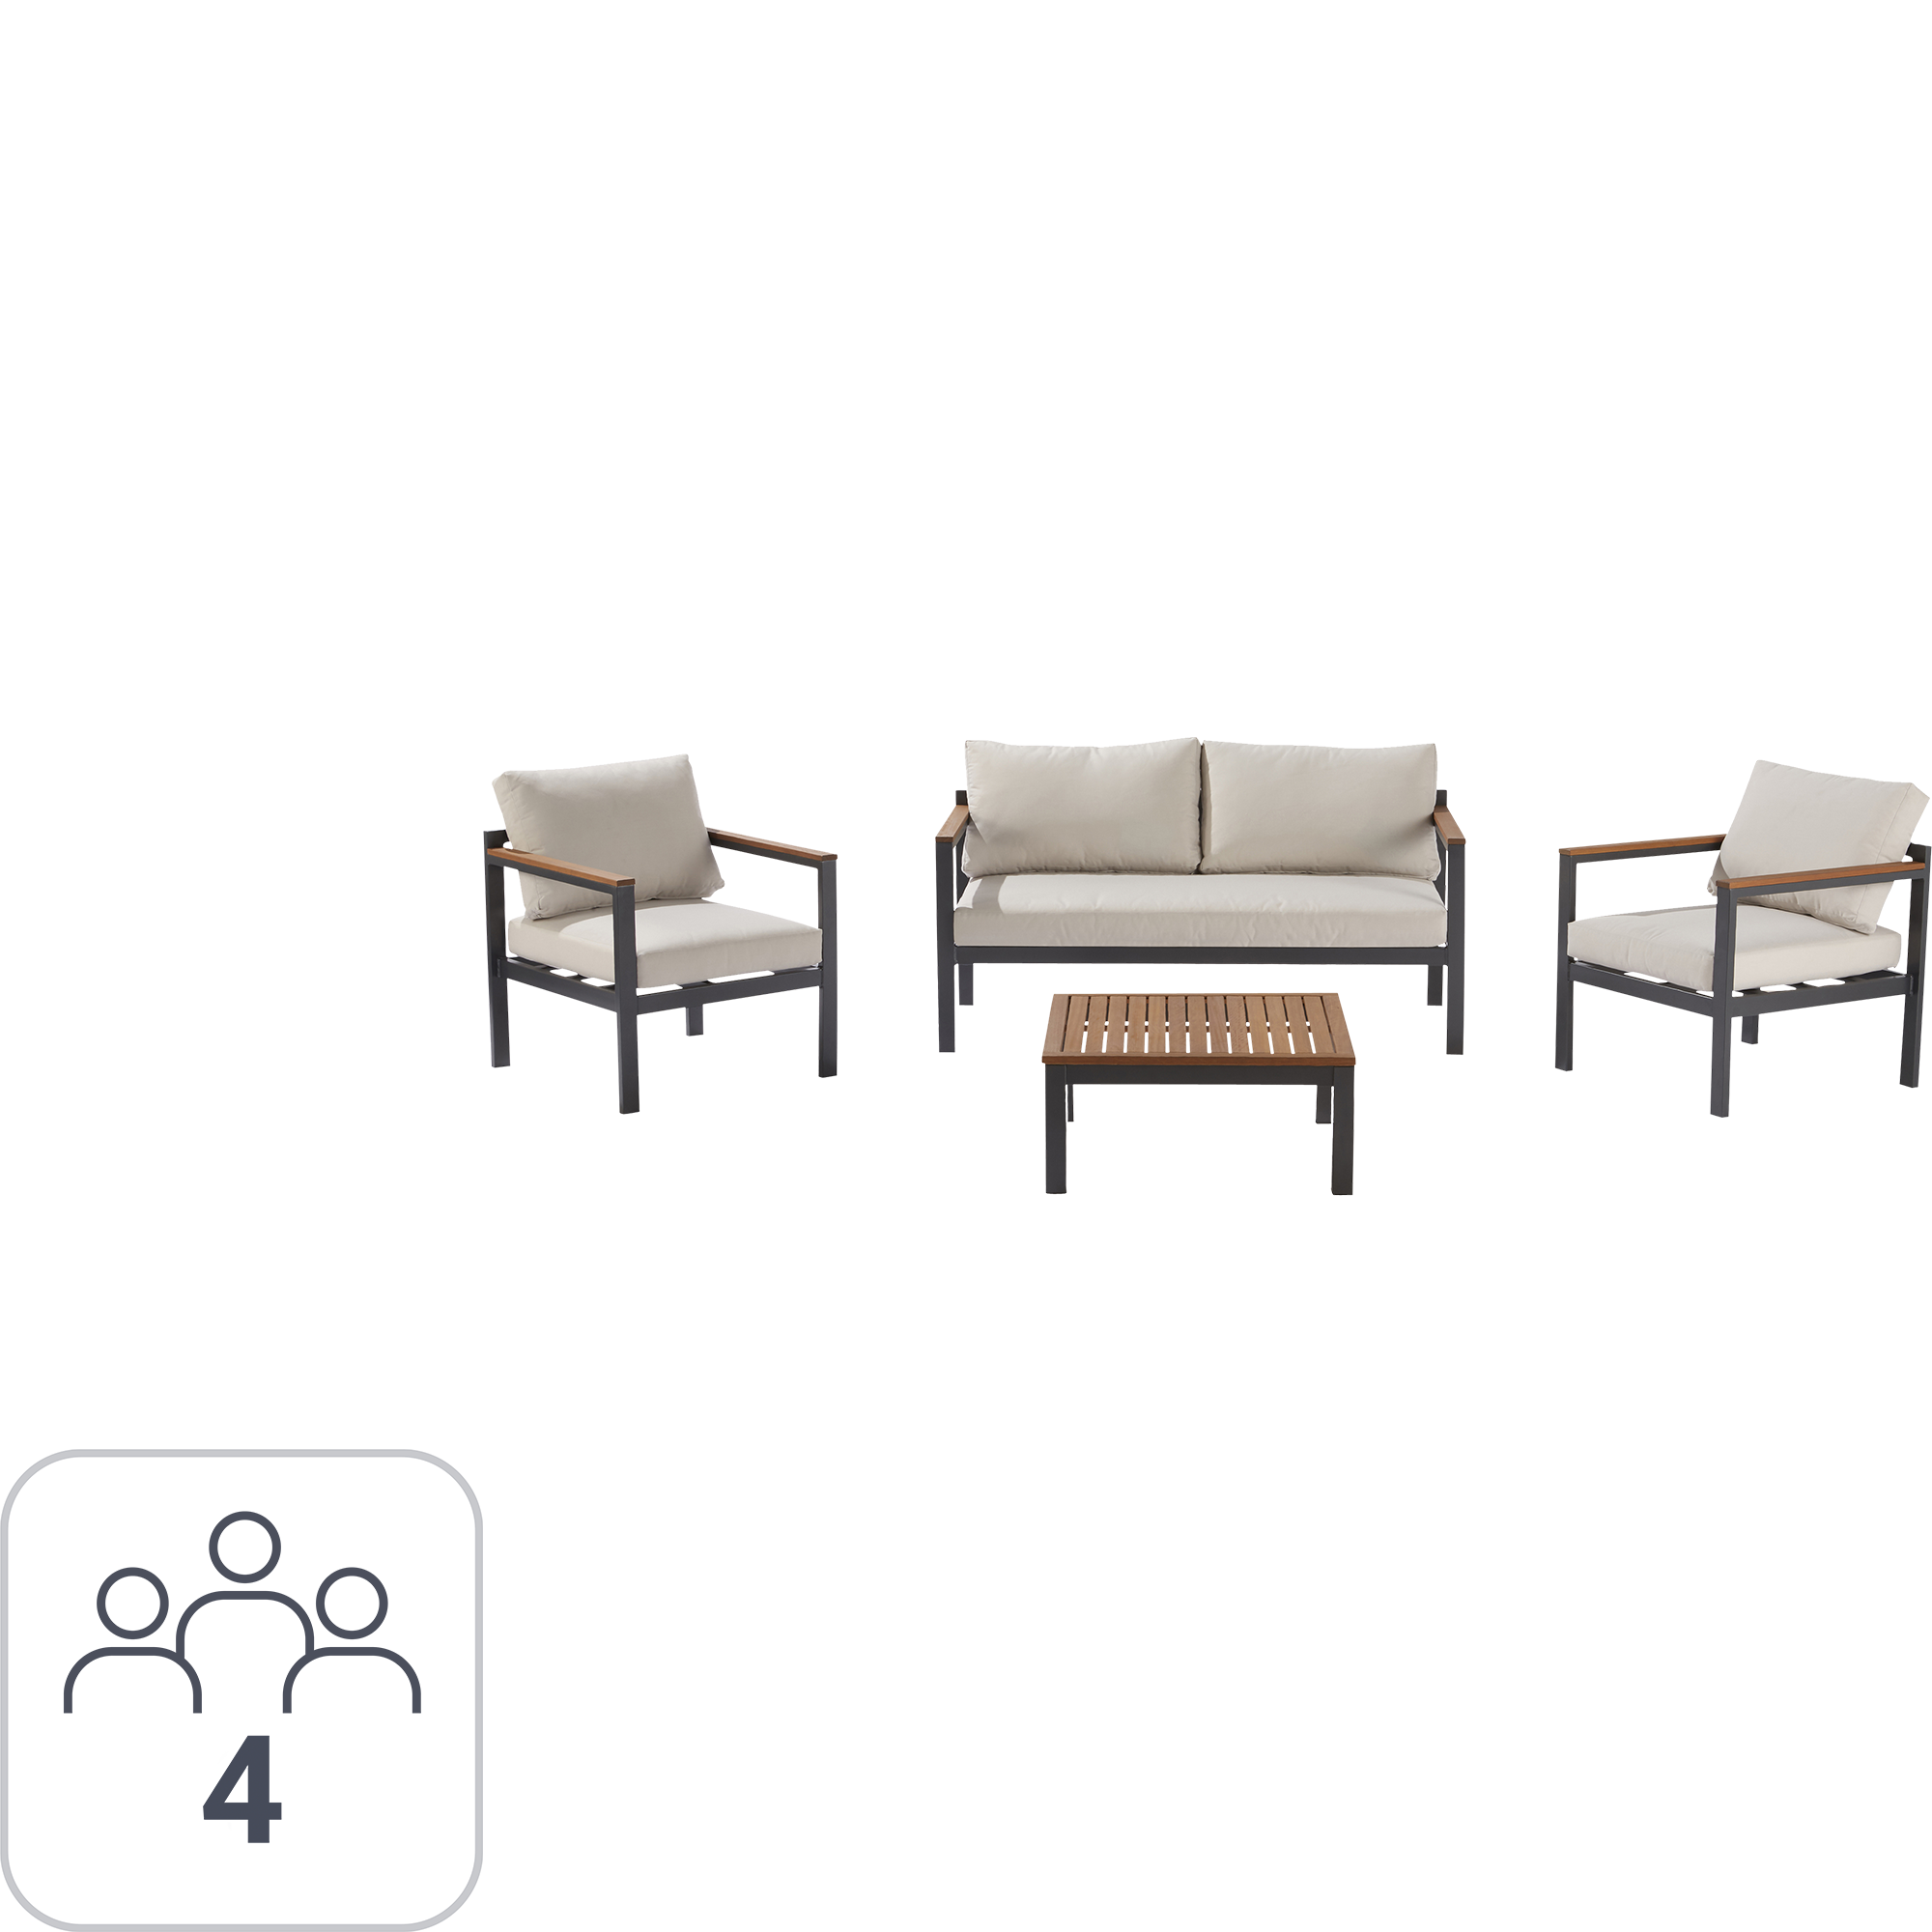 84012887 Набор садовой мебели Oris алюминий/полиэстер/дерево темно-серый: стол, диван и 2 кресла STLM-0046156 NATERIAL